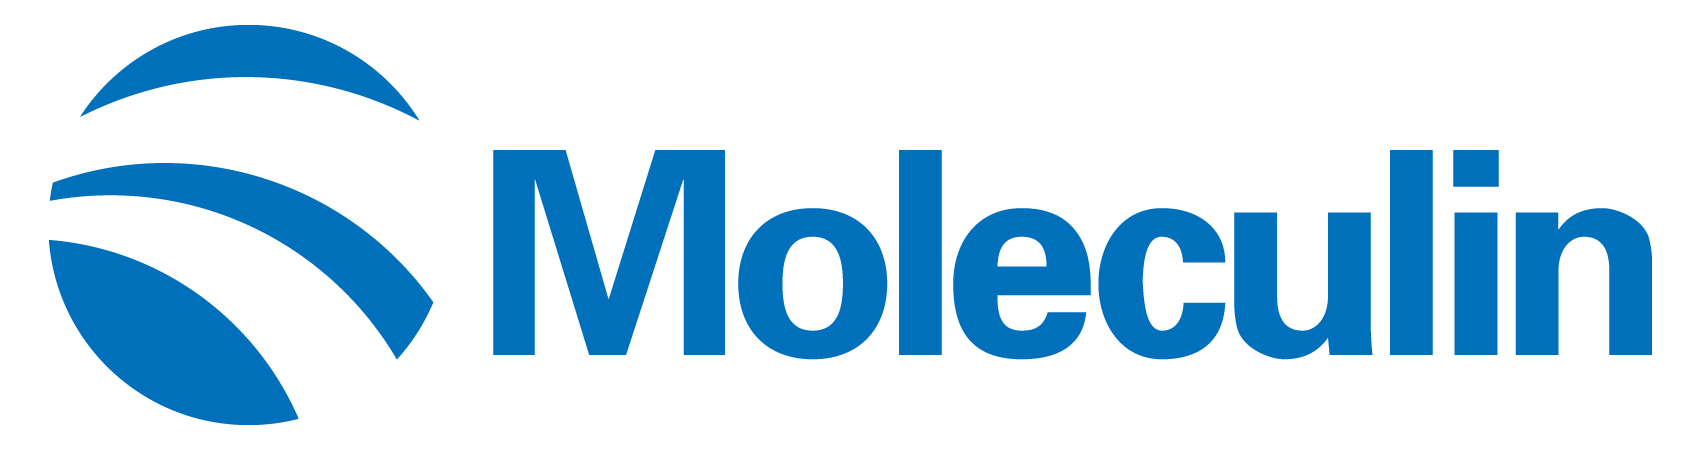 moleculin-logo_horiza41.jpg